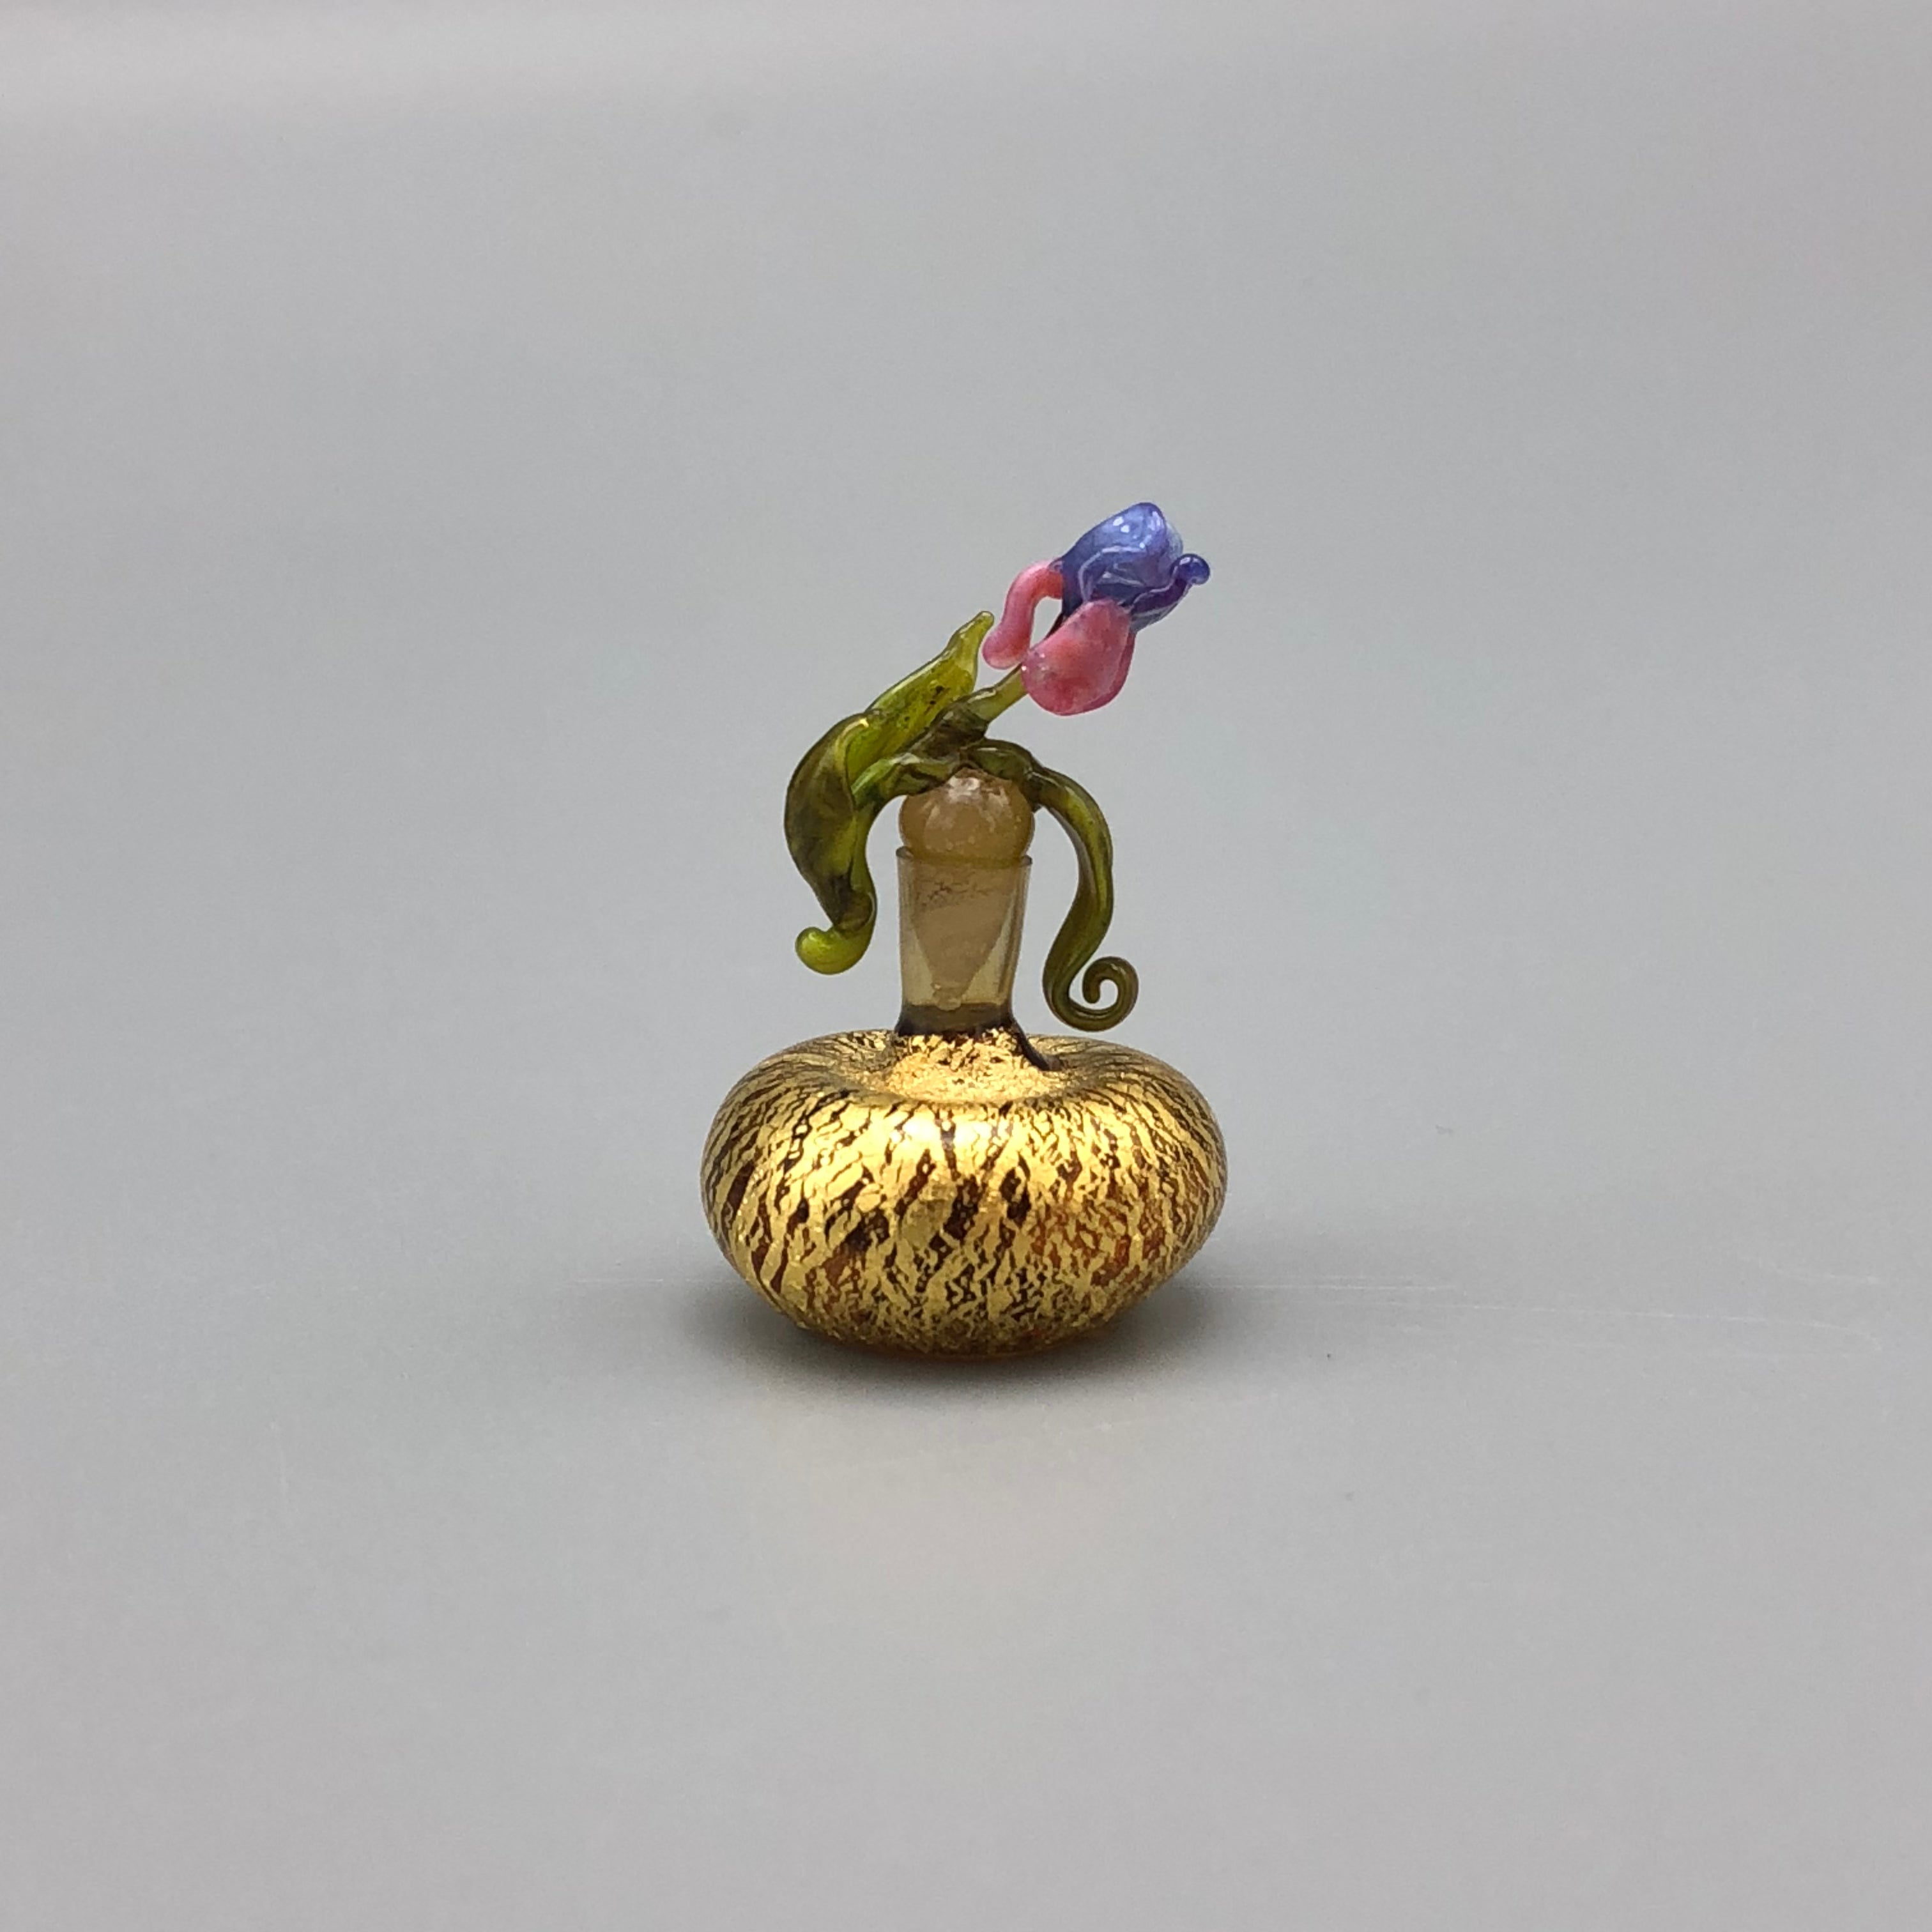 Miniatura de Cristal Jarrón con Flor de Lirio